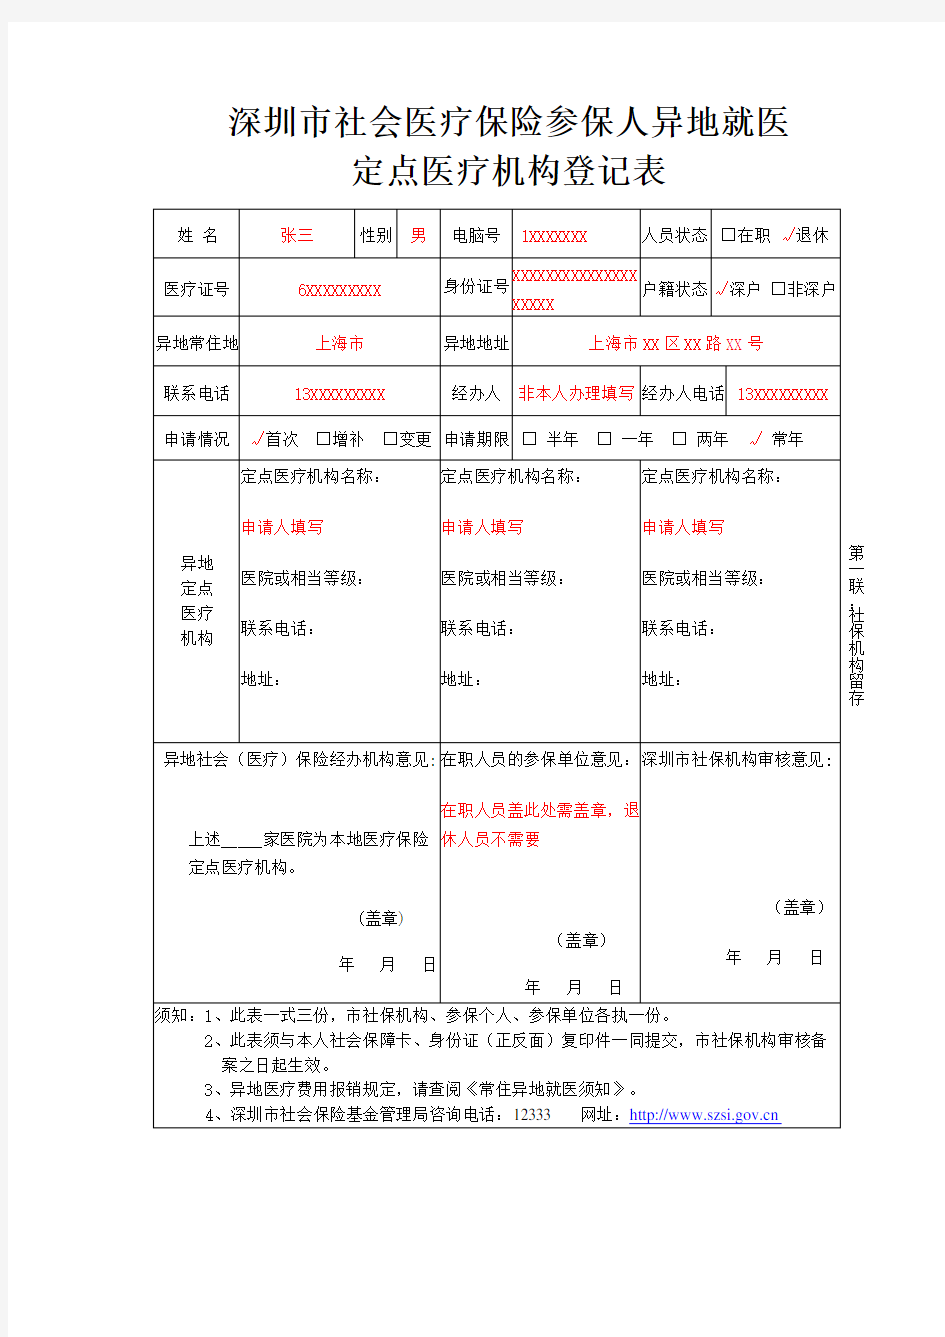 深圳市社会医疗保险参保人异地就医定点医疗机构登记表(样表)